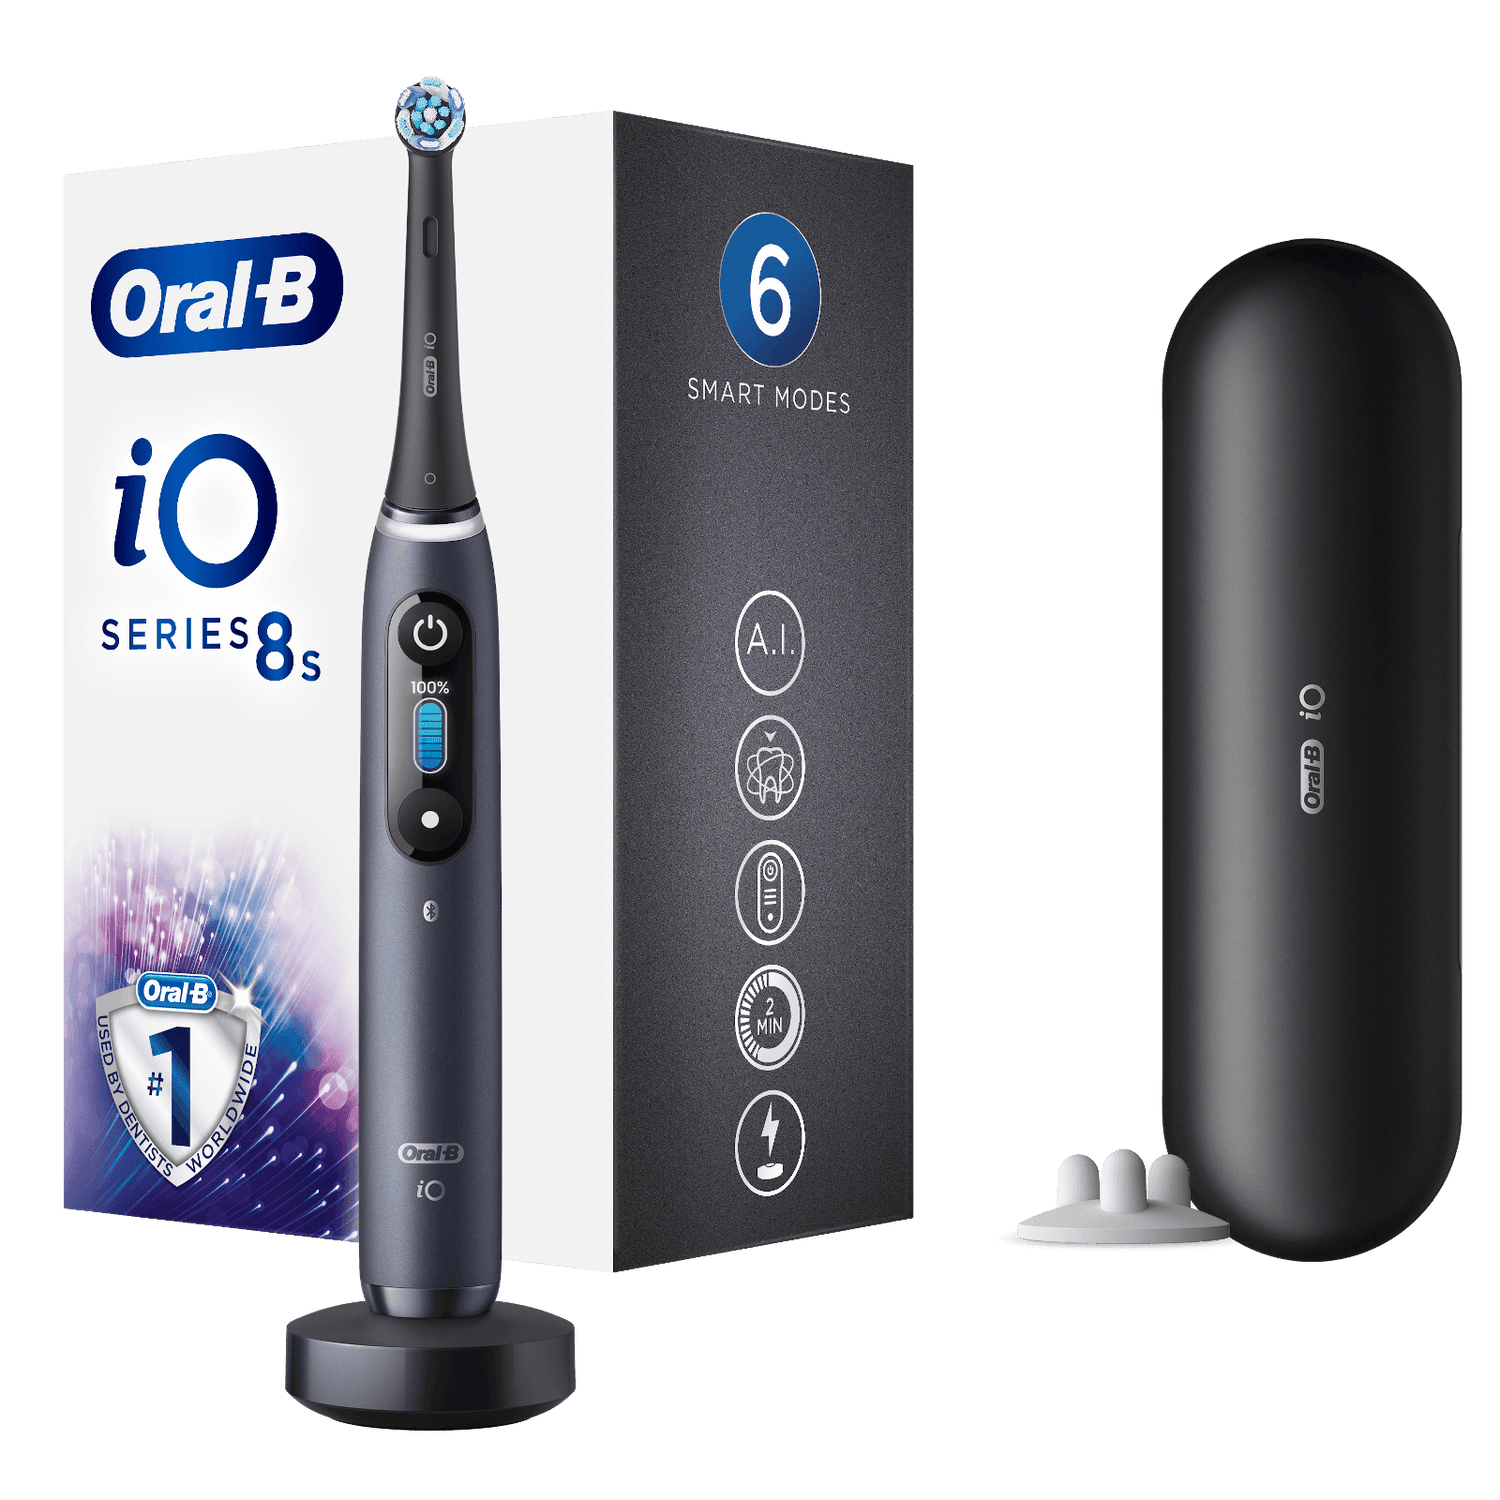 Oral-B iO8n Elektrische Tandenborstel Zwart + 4 Opzetborstels